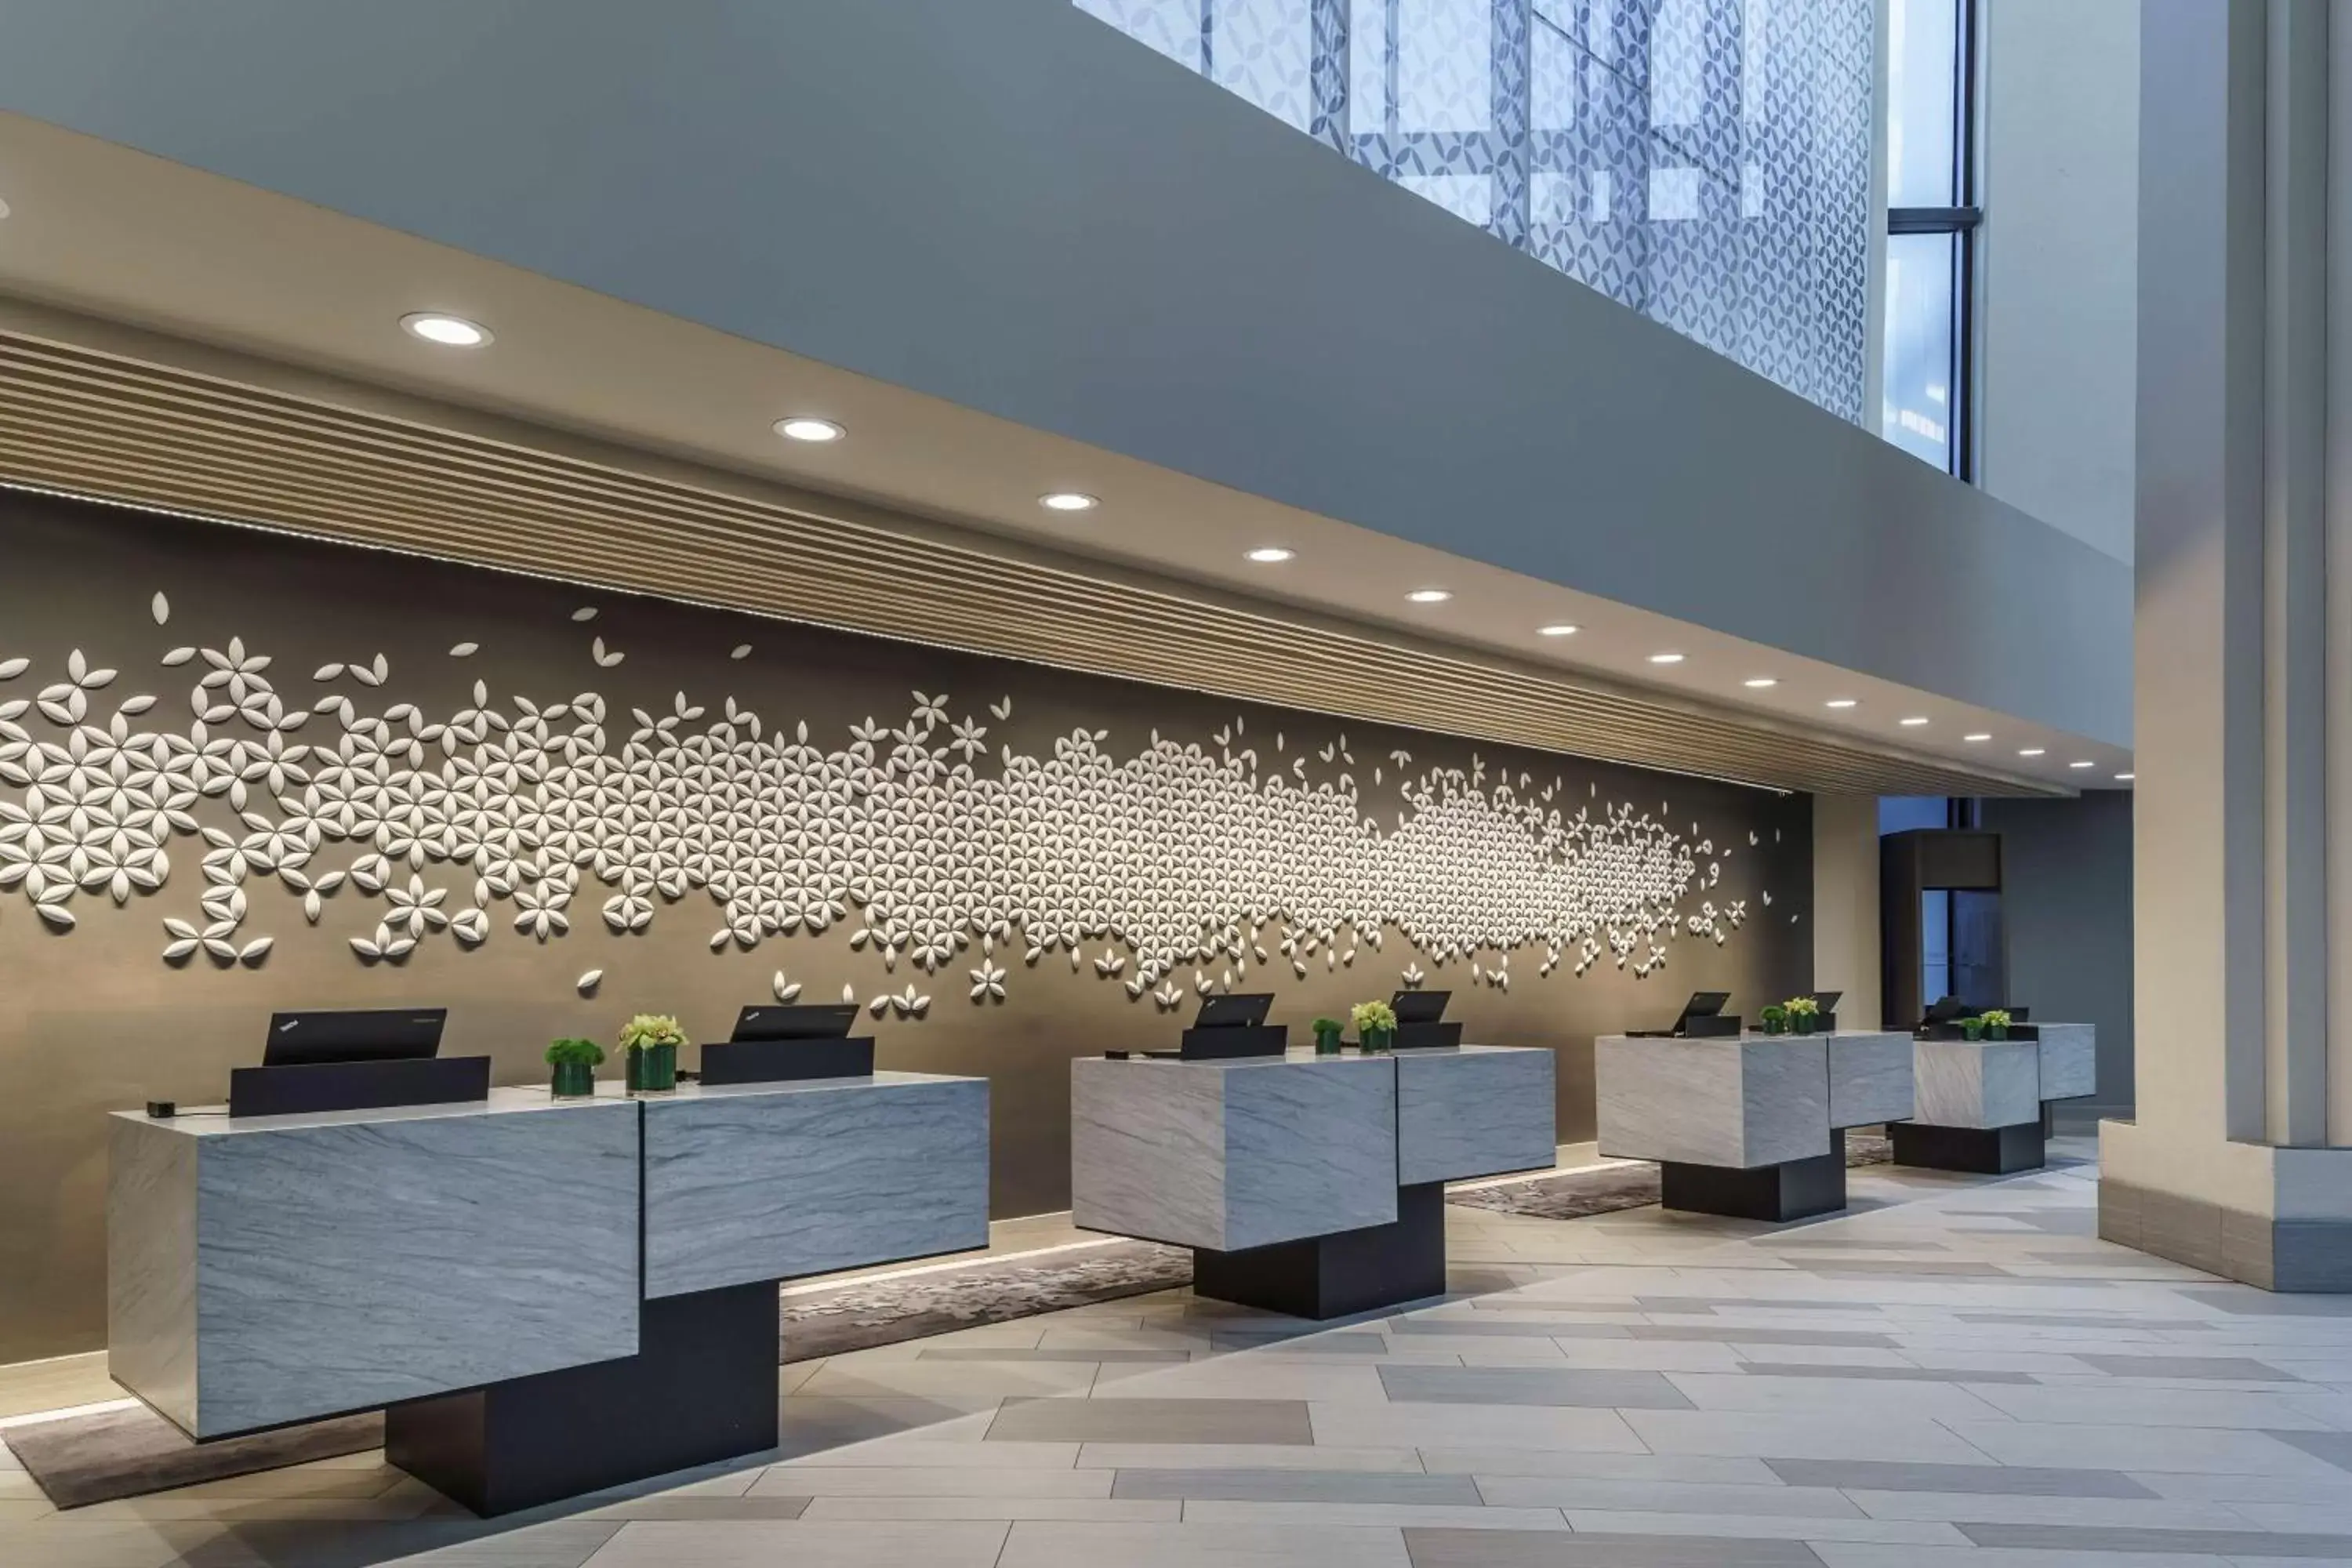 Lobby or reception, Lobby/Reception in Hyatt Regency Grand Cypress Resort